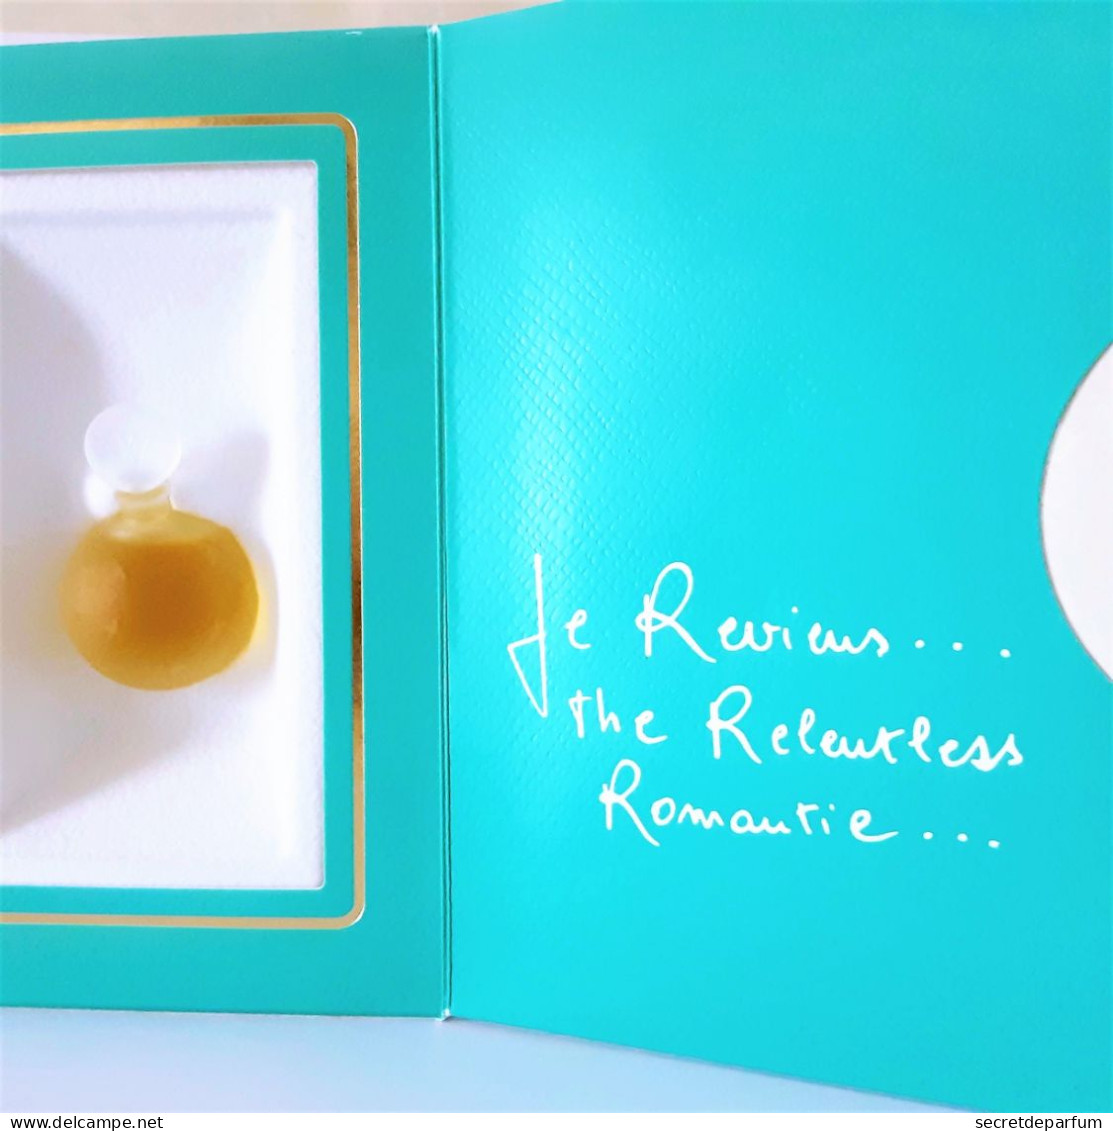 Miniatures De Parfum JE REVIENS   De WORTH   EDP   7 Ml  + BOITE COFFRET - Miniatures Femmes (avec Boite)